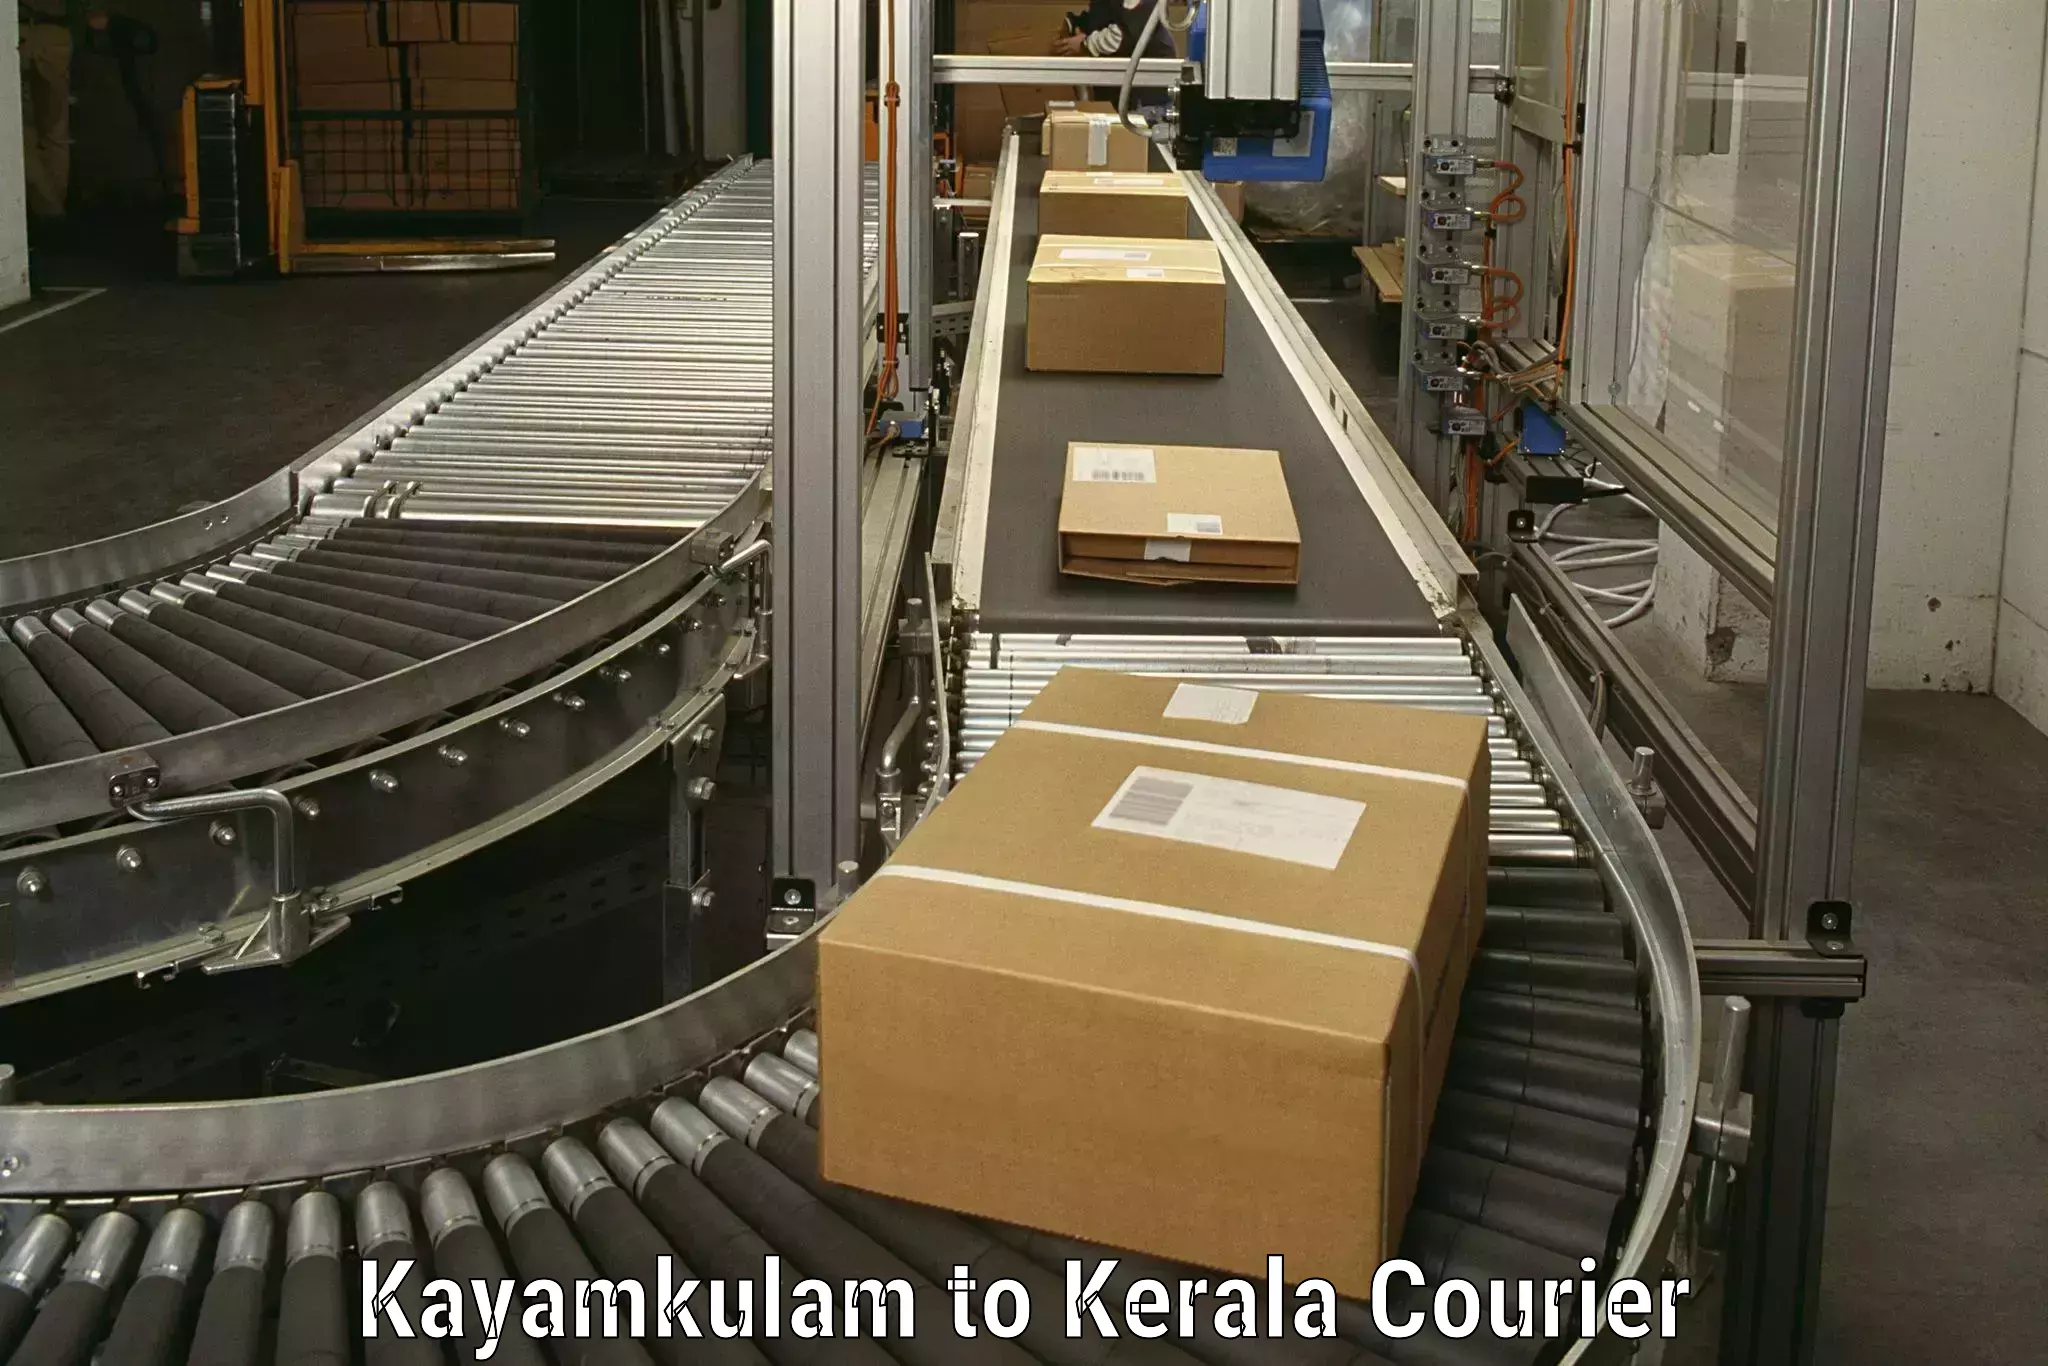 Reliable moving assistance Kayamkulam to Edavanna